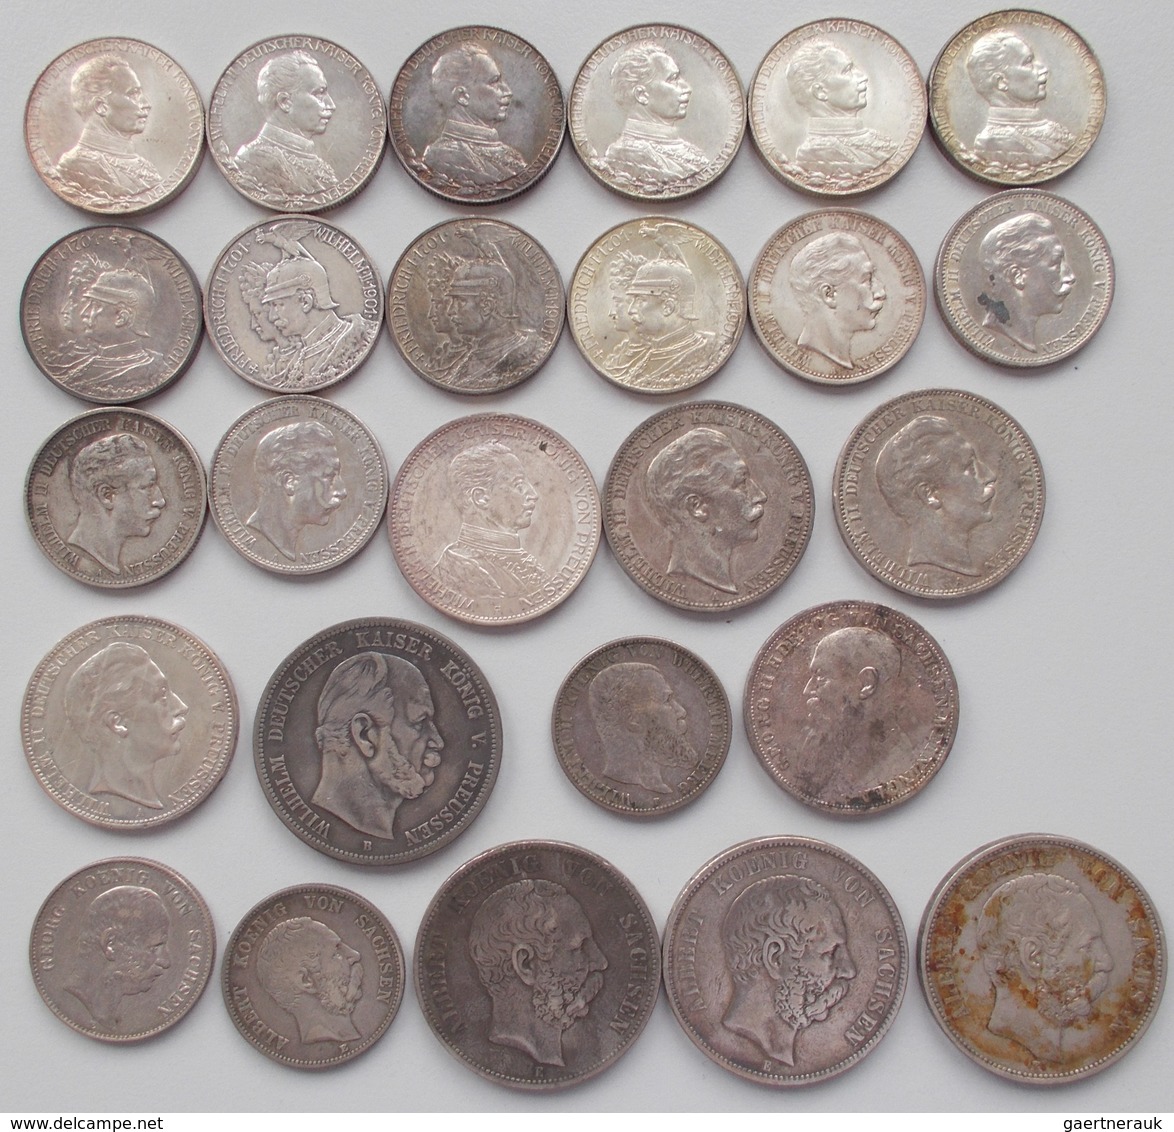 Umlaufmünzen 2 Mark Bis 5 Mark: Lot 26 Münzen, 2 Mark, 3 Mark, 5 Mark, überwiegend Preußen. - Taler Et Doppeltaler